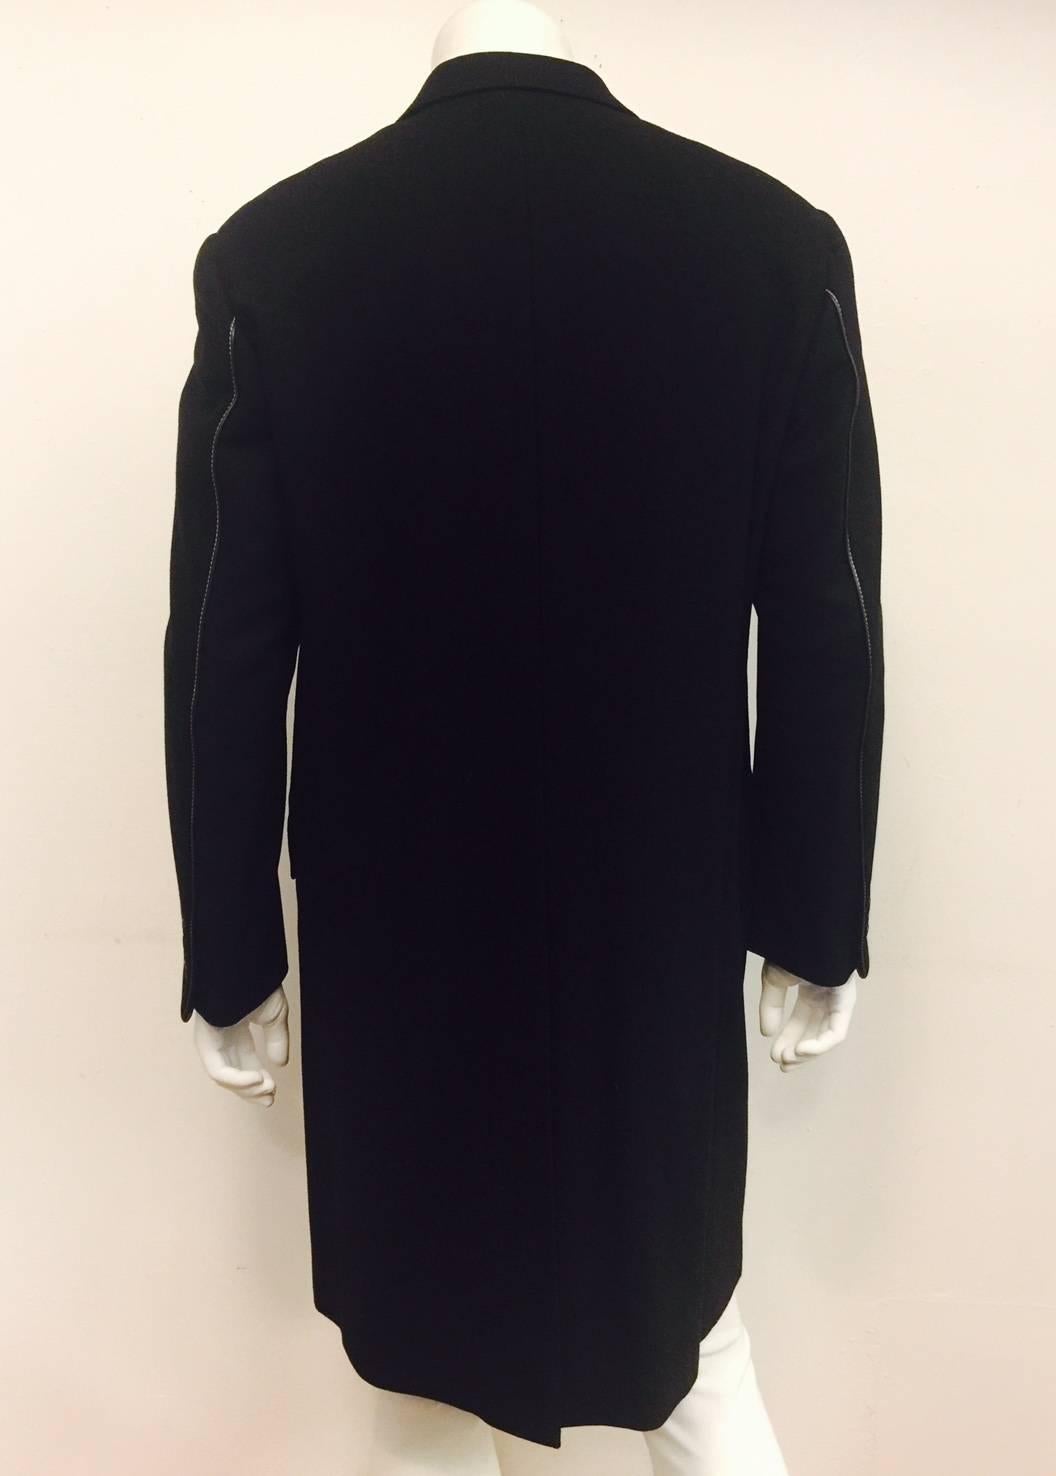 Women's or Men's Men's Handsome Hermes Wool and Leather Trim Topcoat in Black, Sz 42